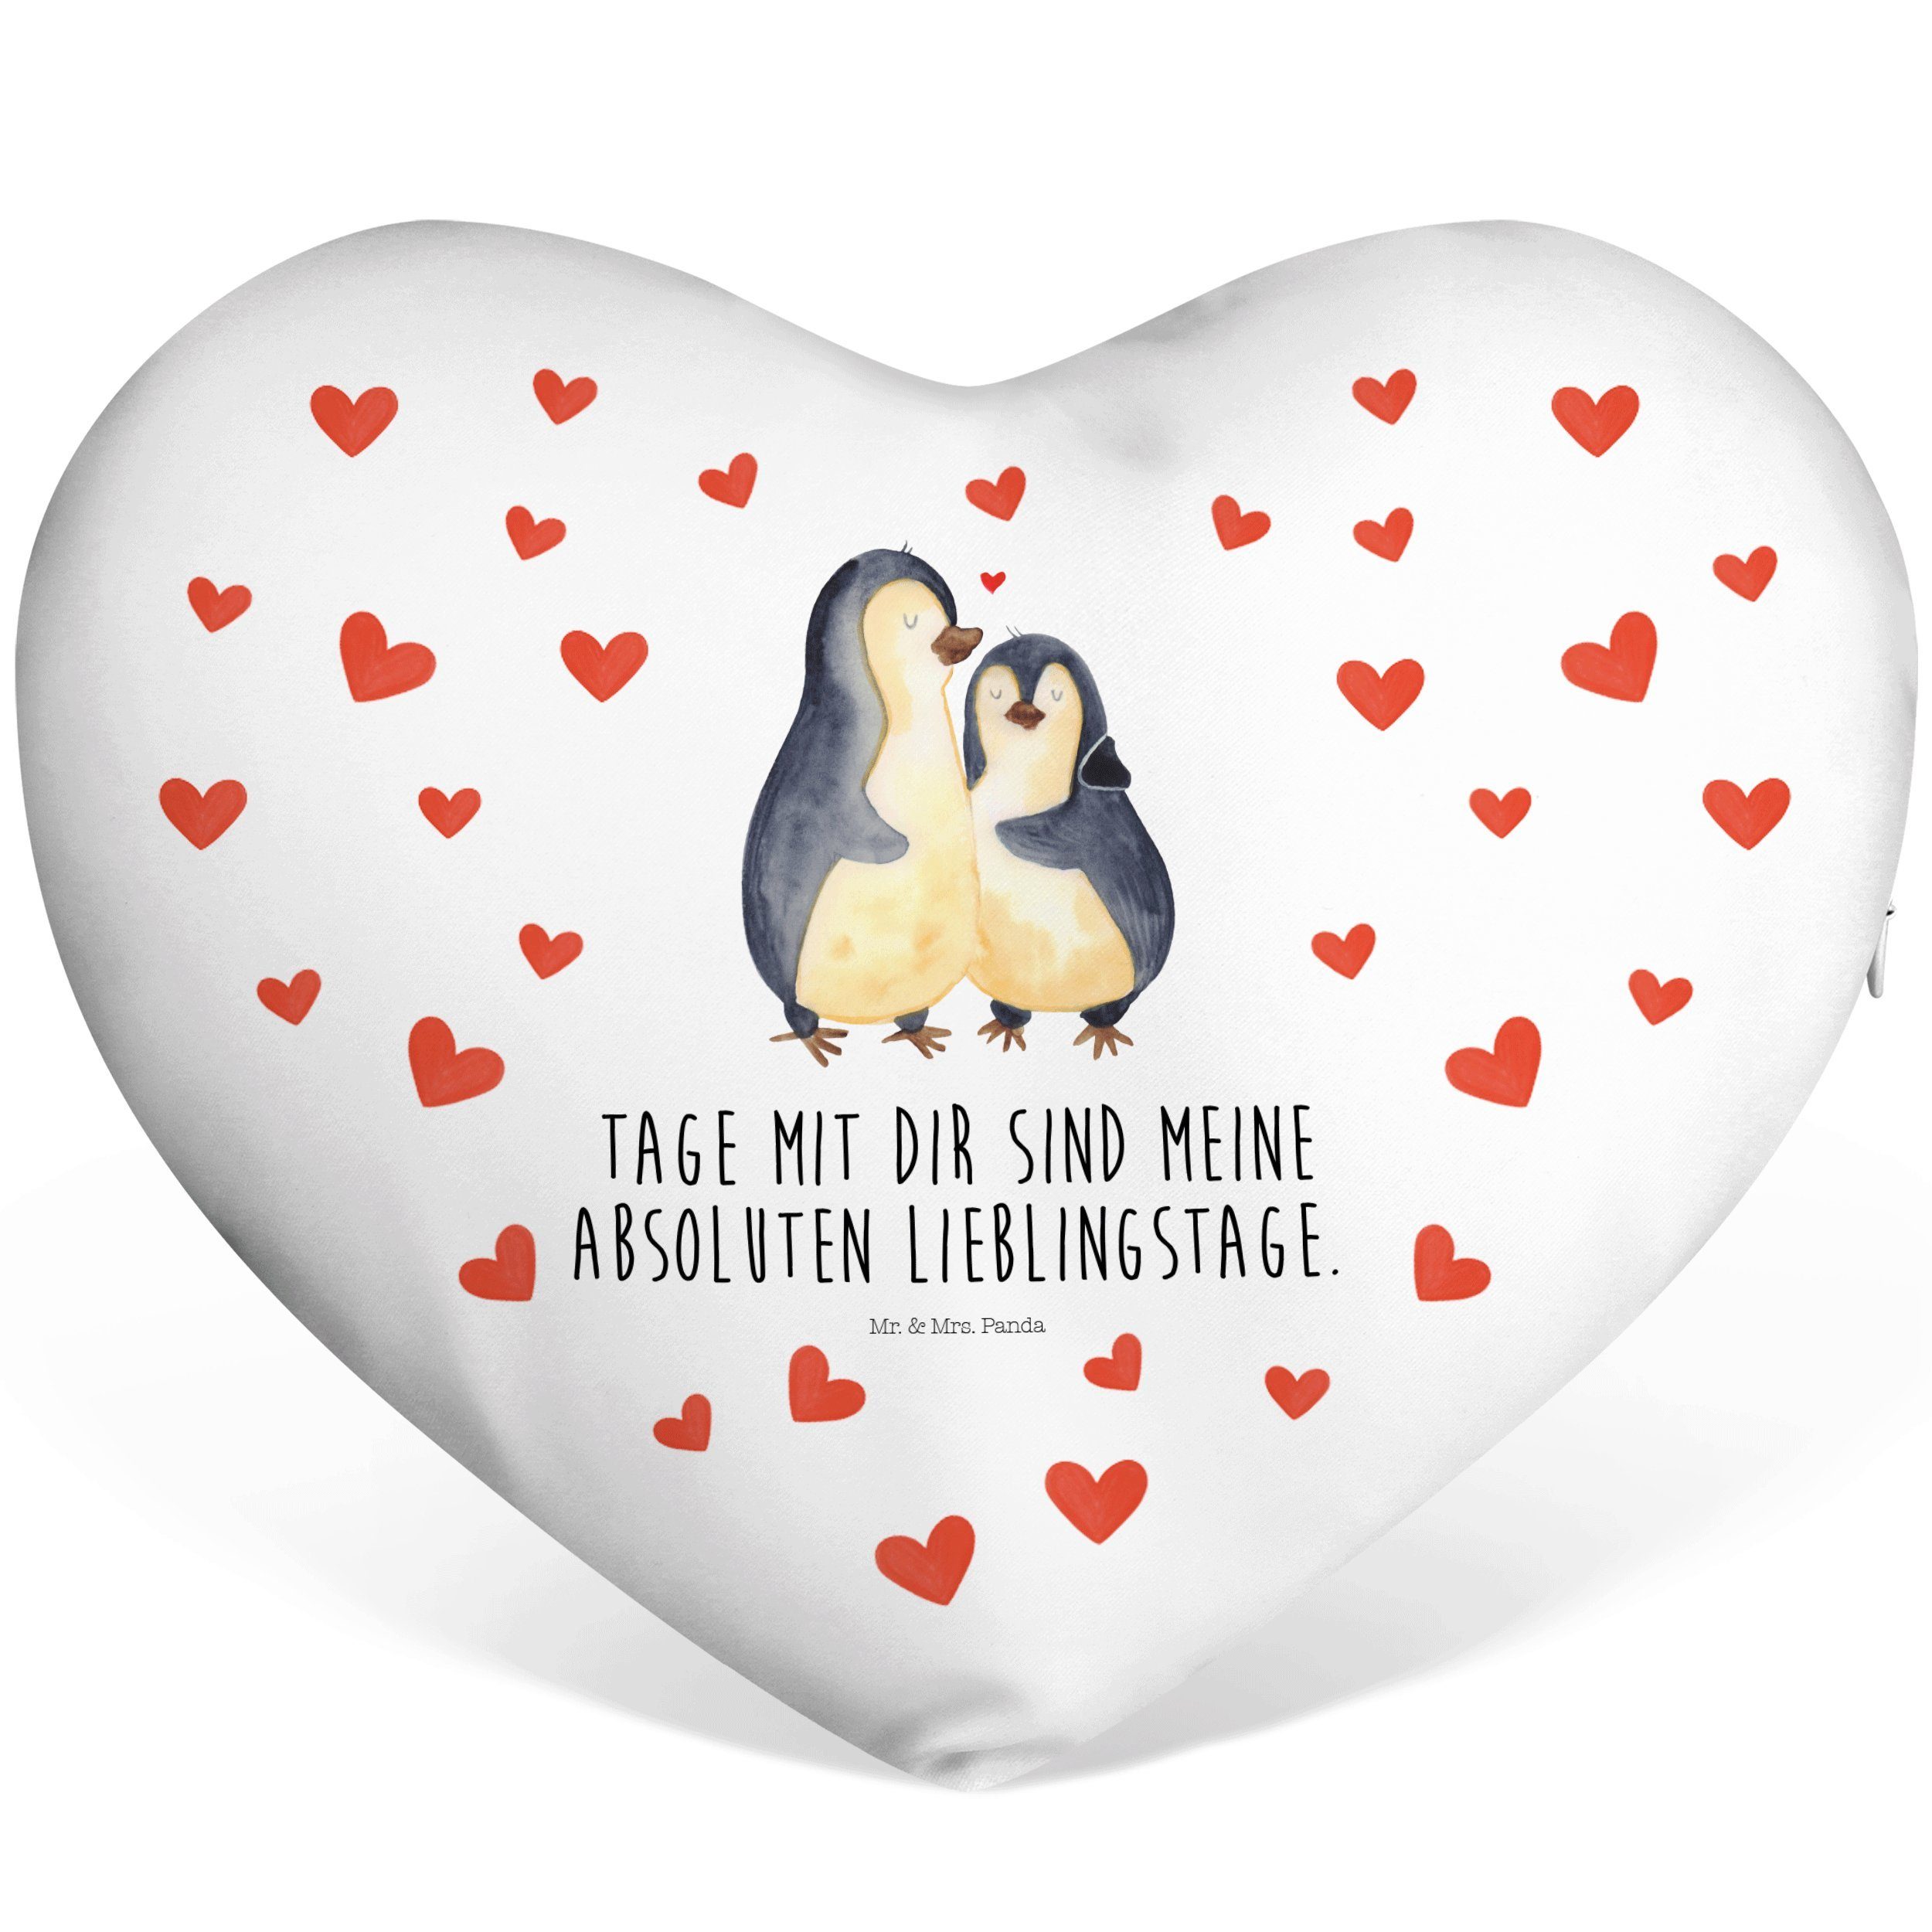 Mr. & Mrs. Panda Dekokissen Pinguin umarmend - Weiß - Geschenk, Liebe, Liebesbeweis, Herzkissen